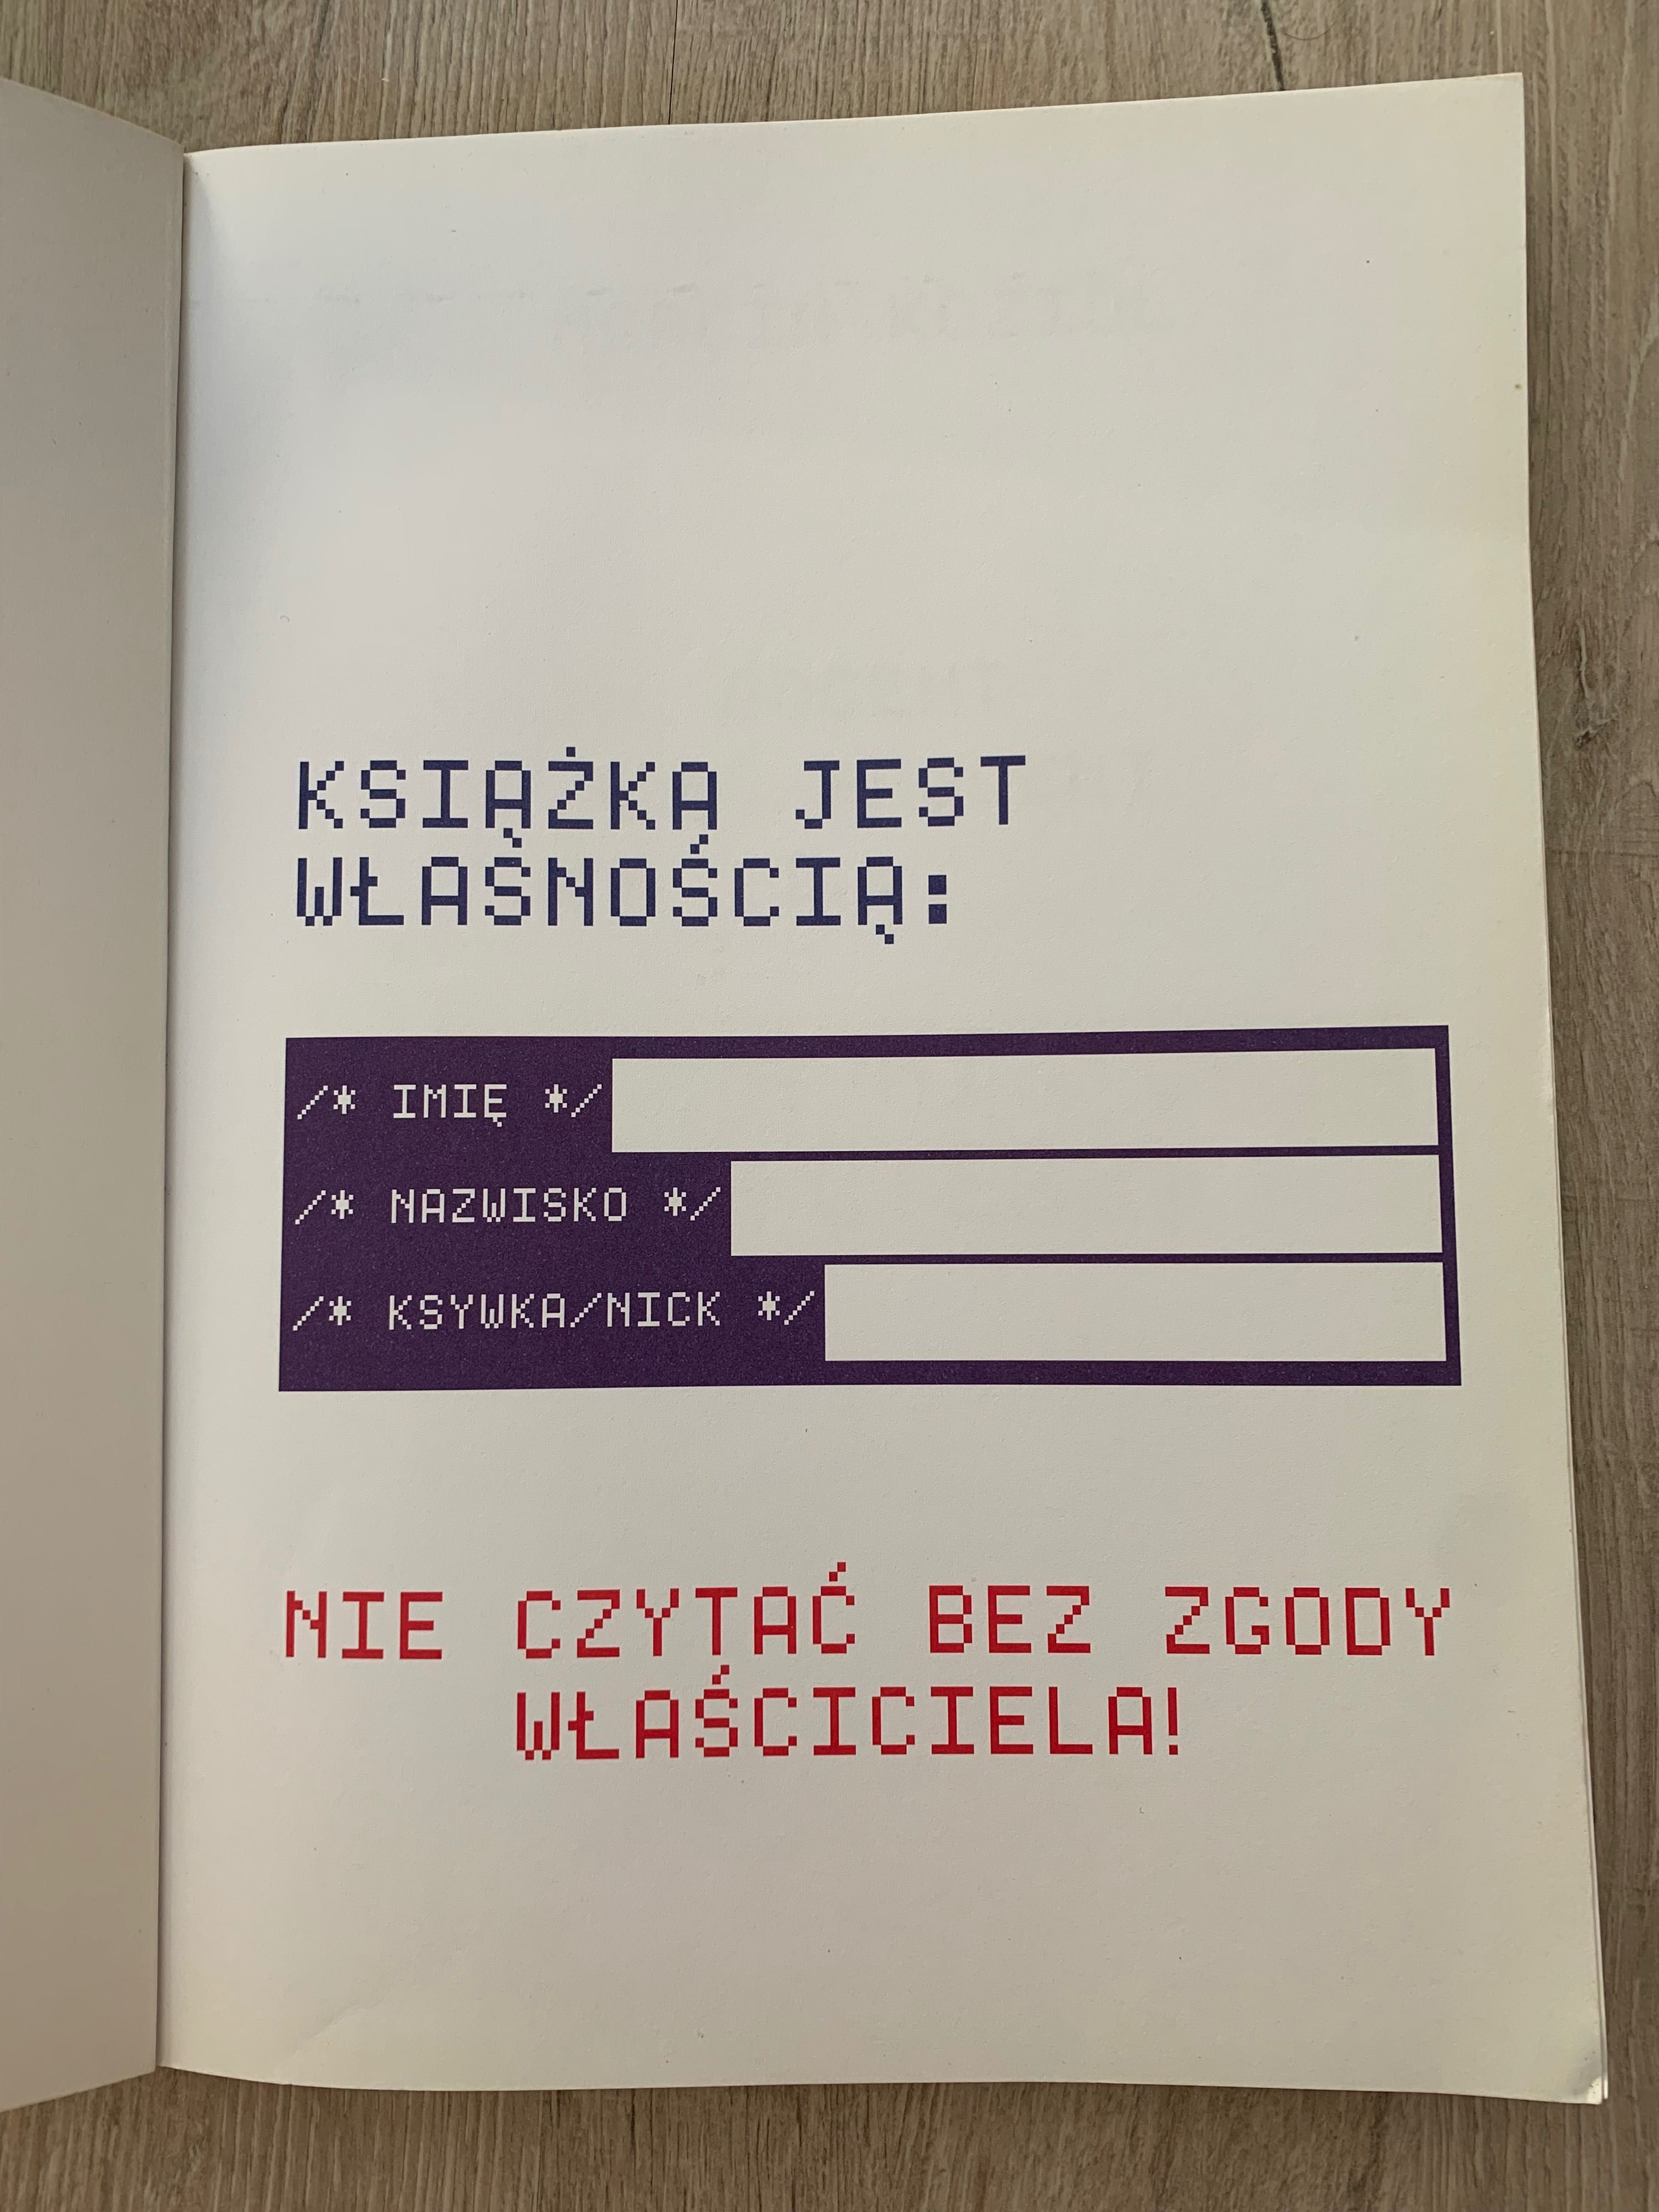 Szalona historia komputerów Marcin Kozioł